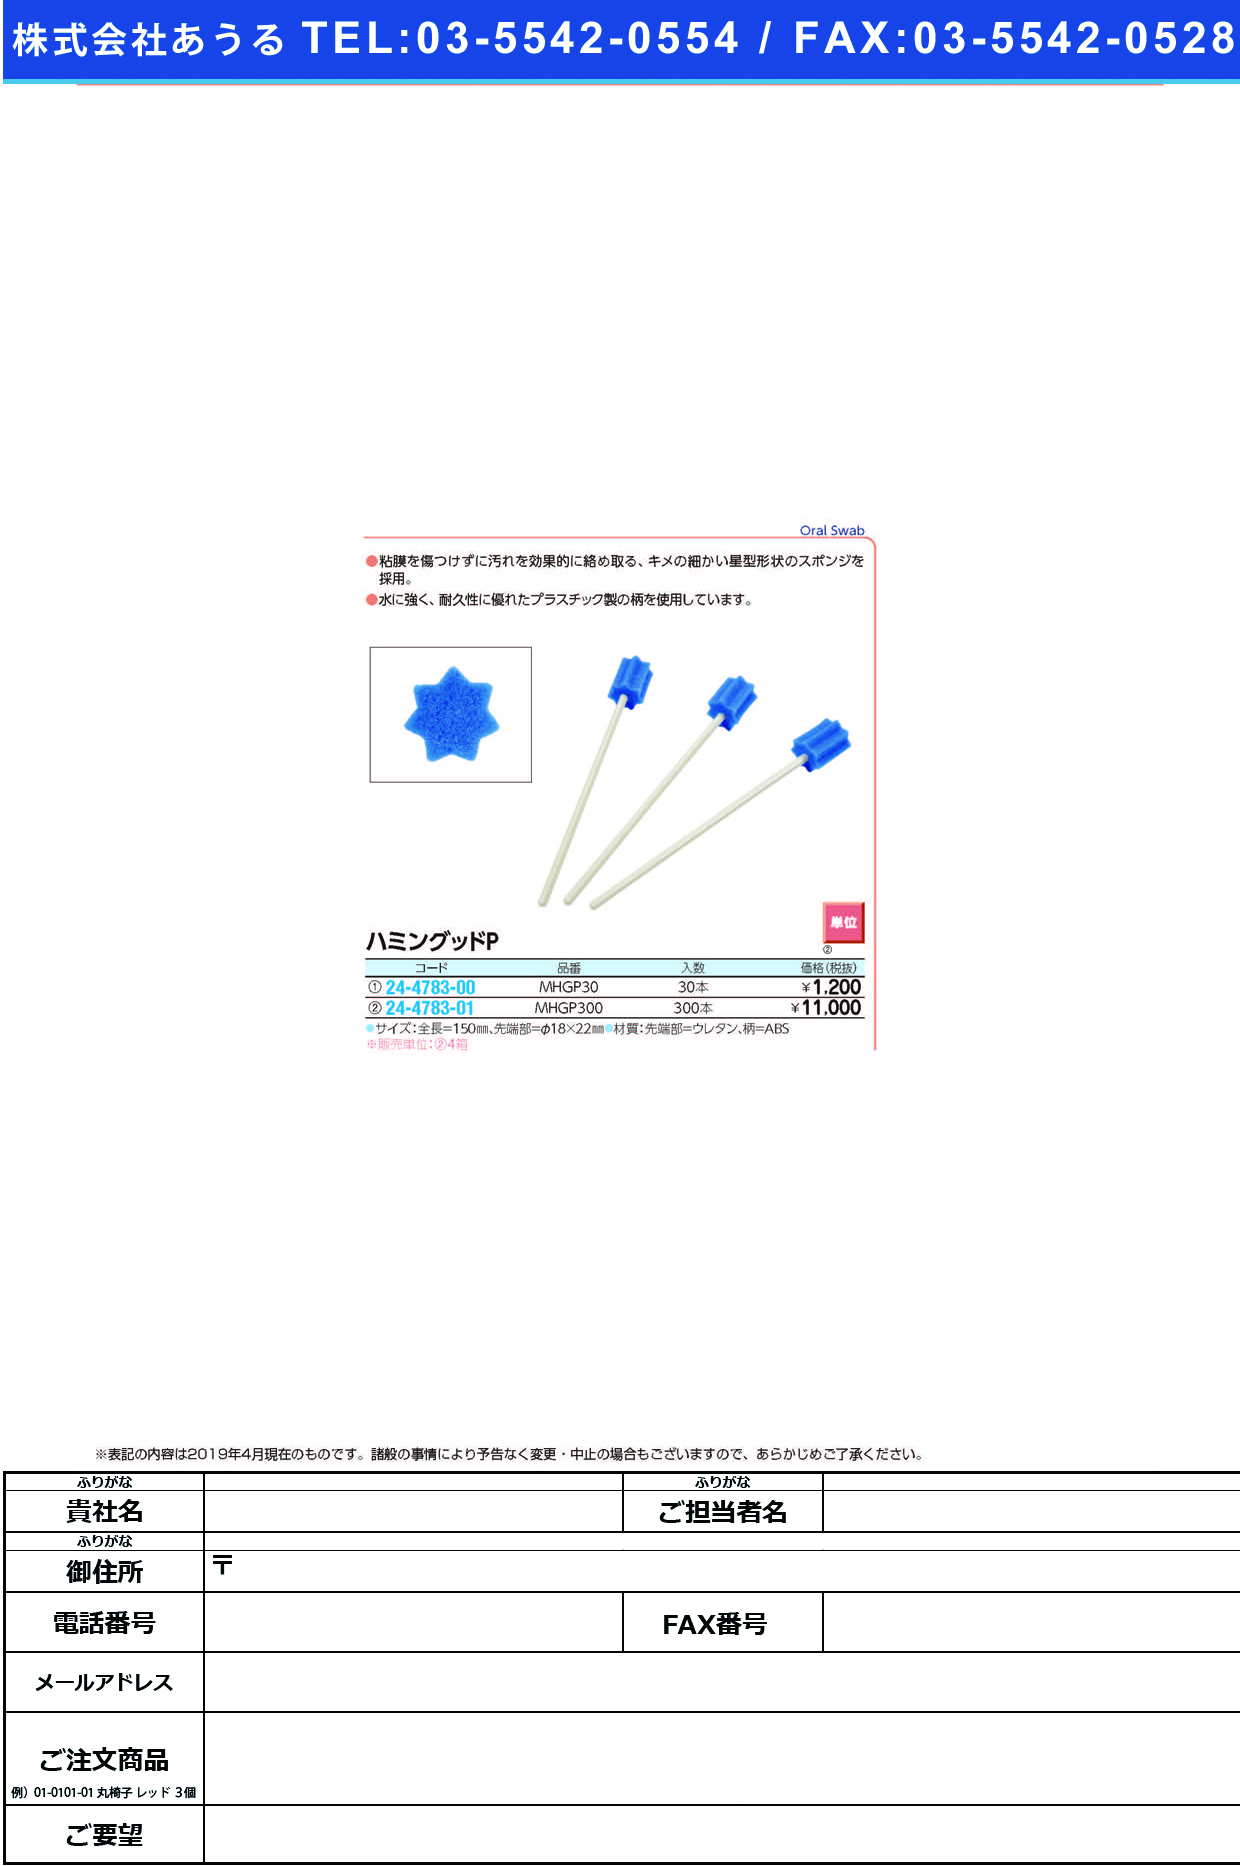 (24-4783-00)ハミングッドＰ MHGP30(30ﾎﾟﾝｲﾘ) ﾊﾐﾝｸﾞｯﾄﾞP(モルテン)【1箱単位】【2019年カタログ商品】